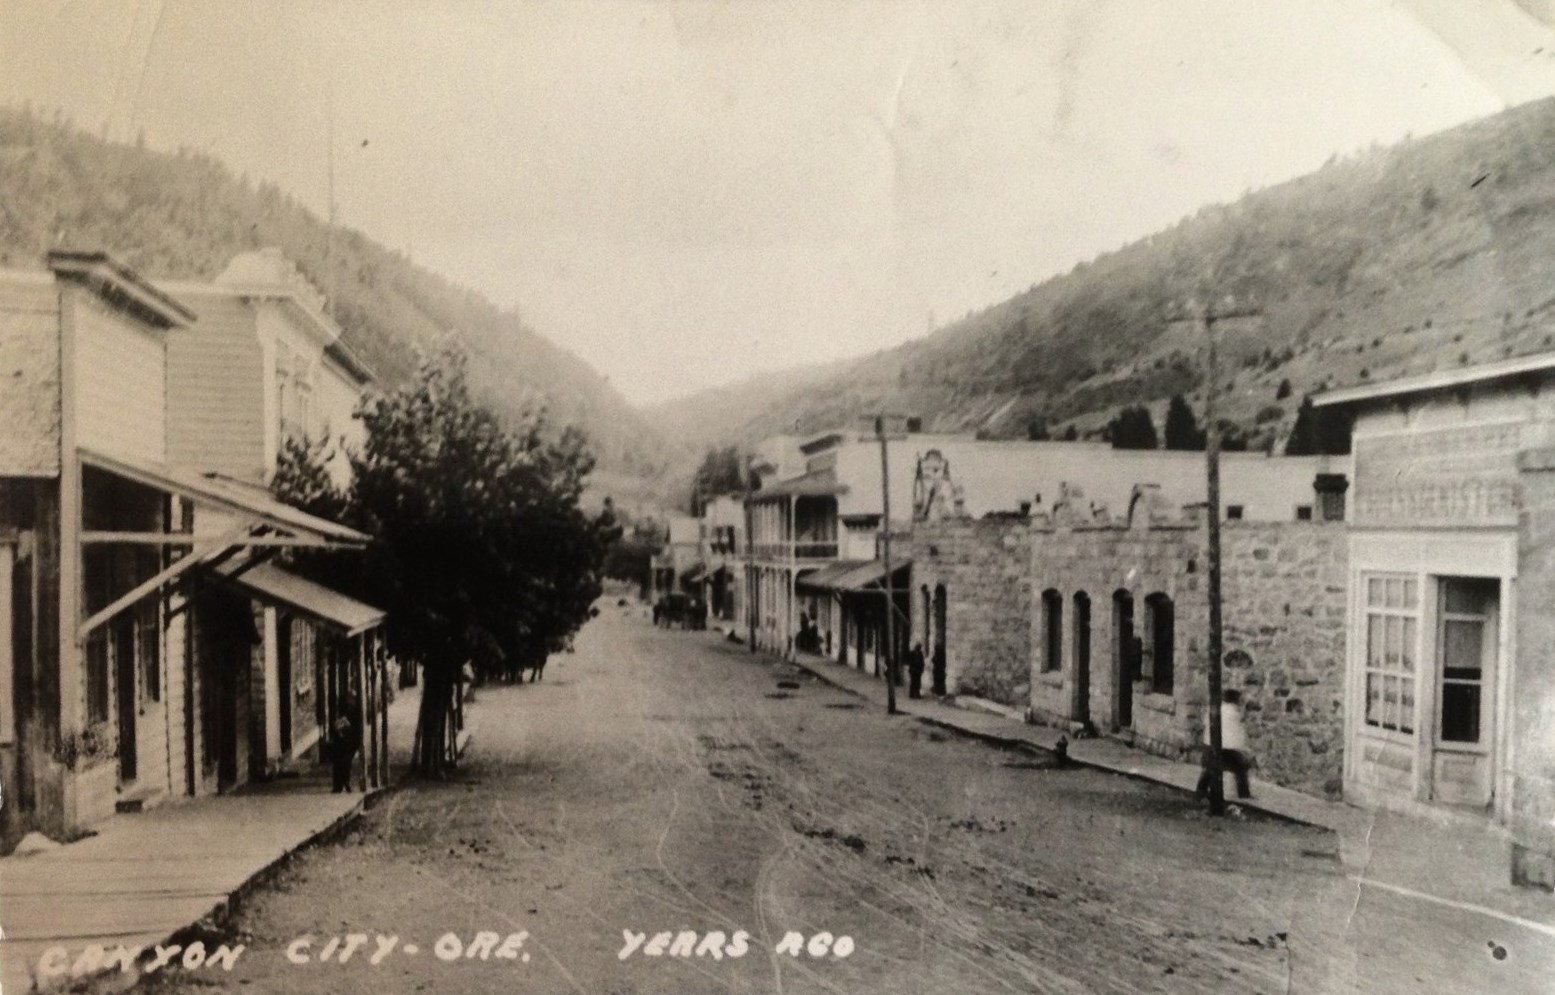 Canyon City, Oregon circa 1880s